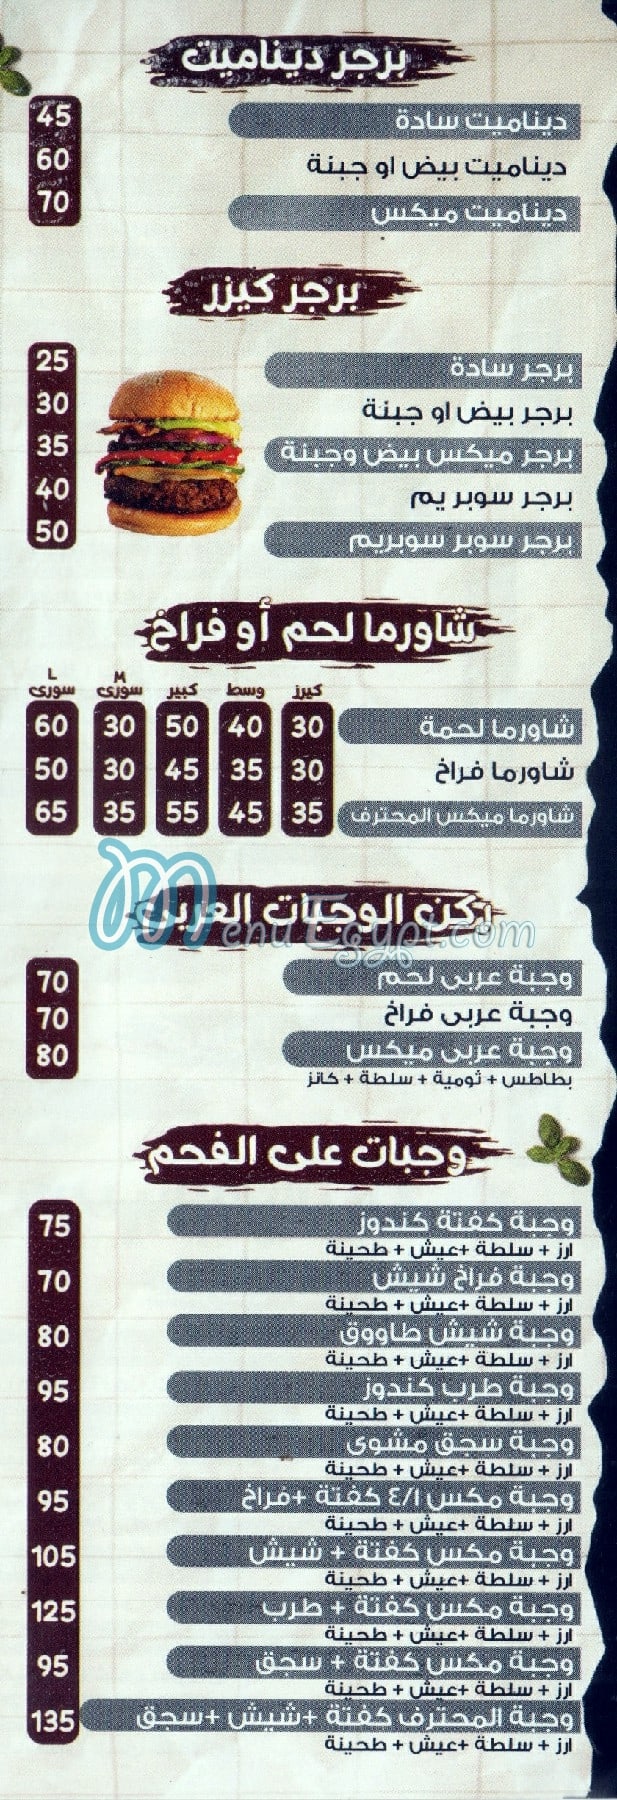 El Mohtaref online menu